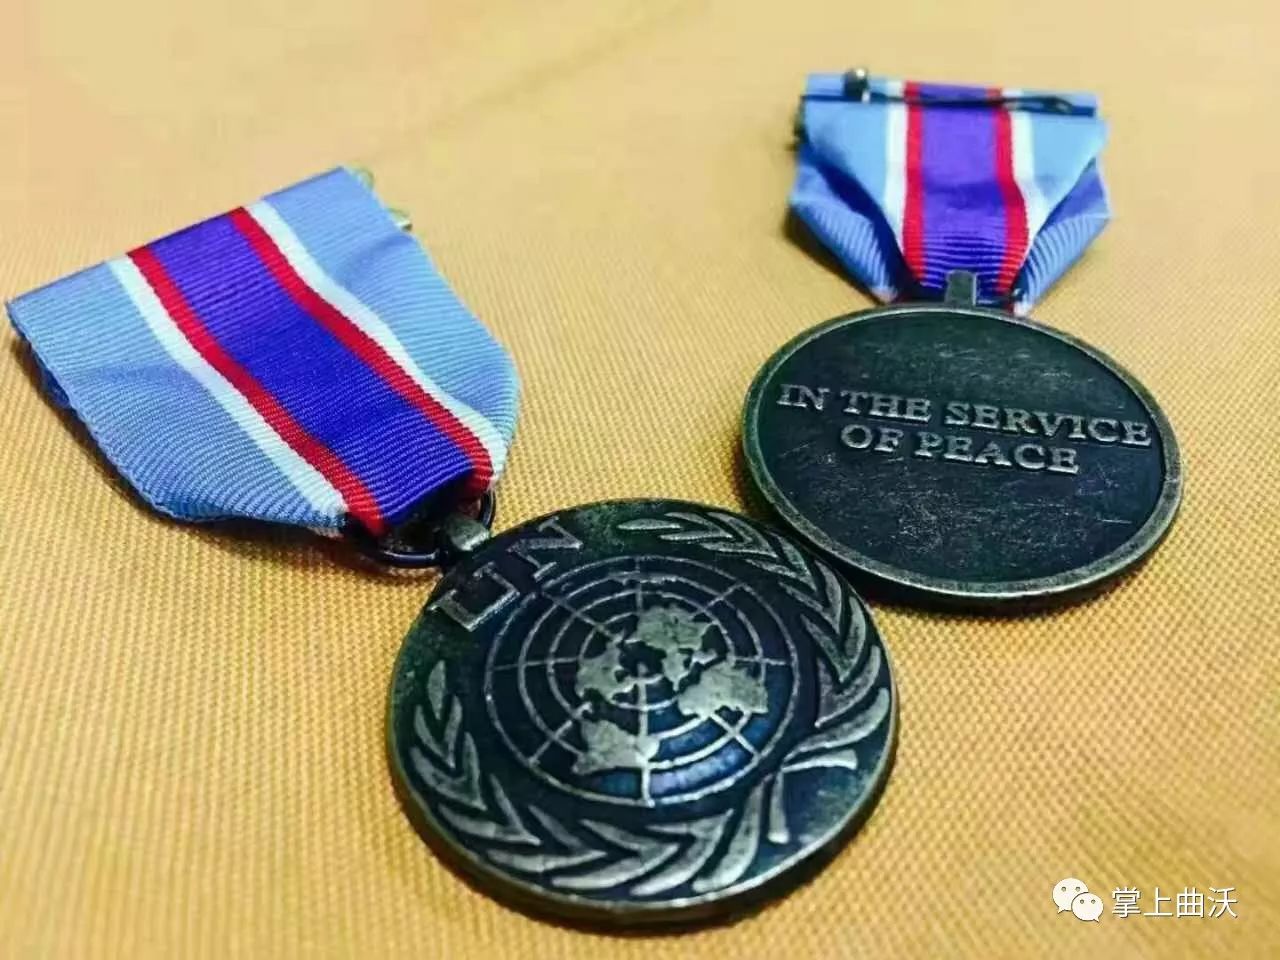 向中国第五支驻利比里亚维和警察防暴队全体队员授予联合国和平勋章